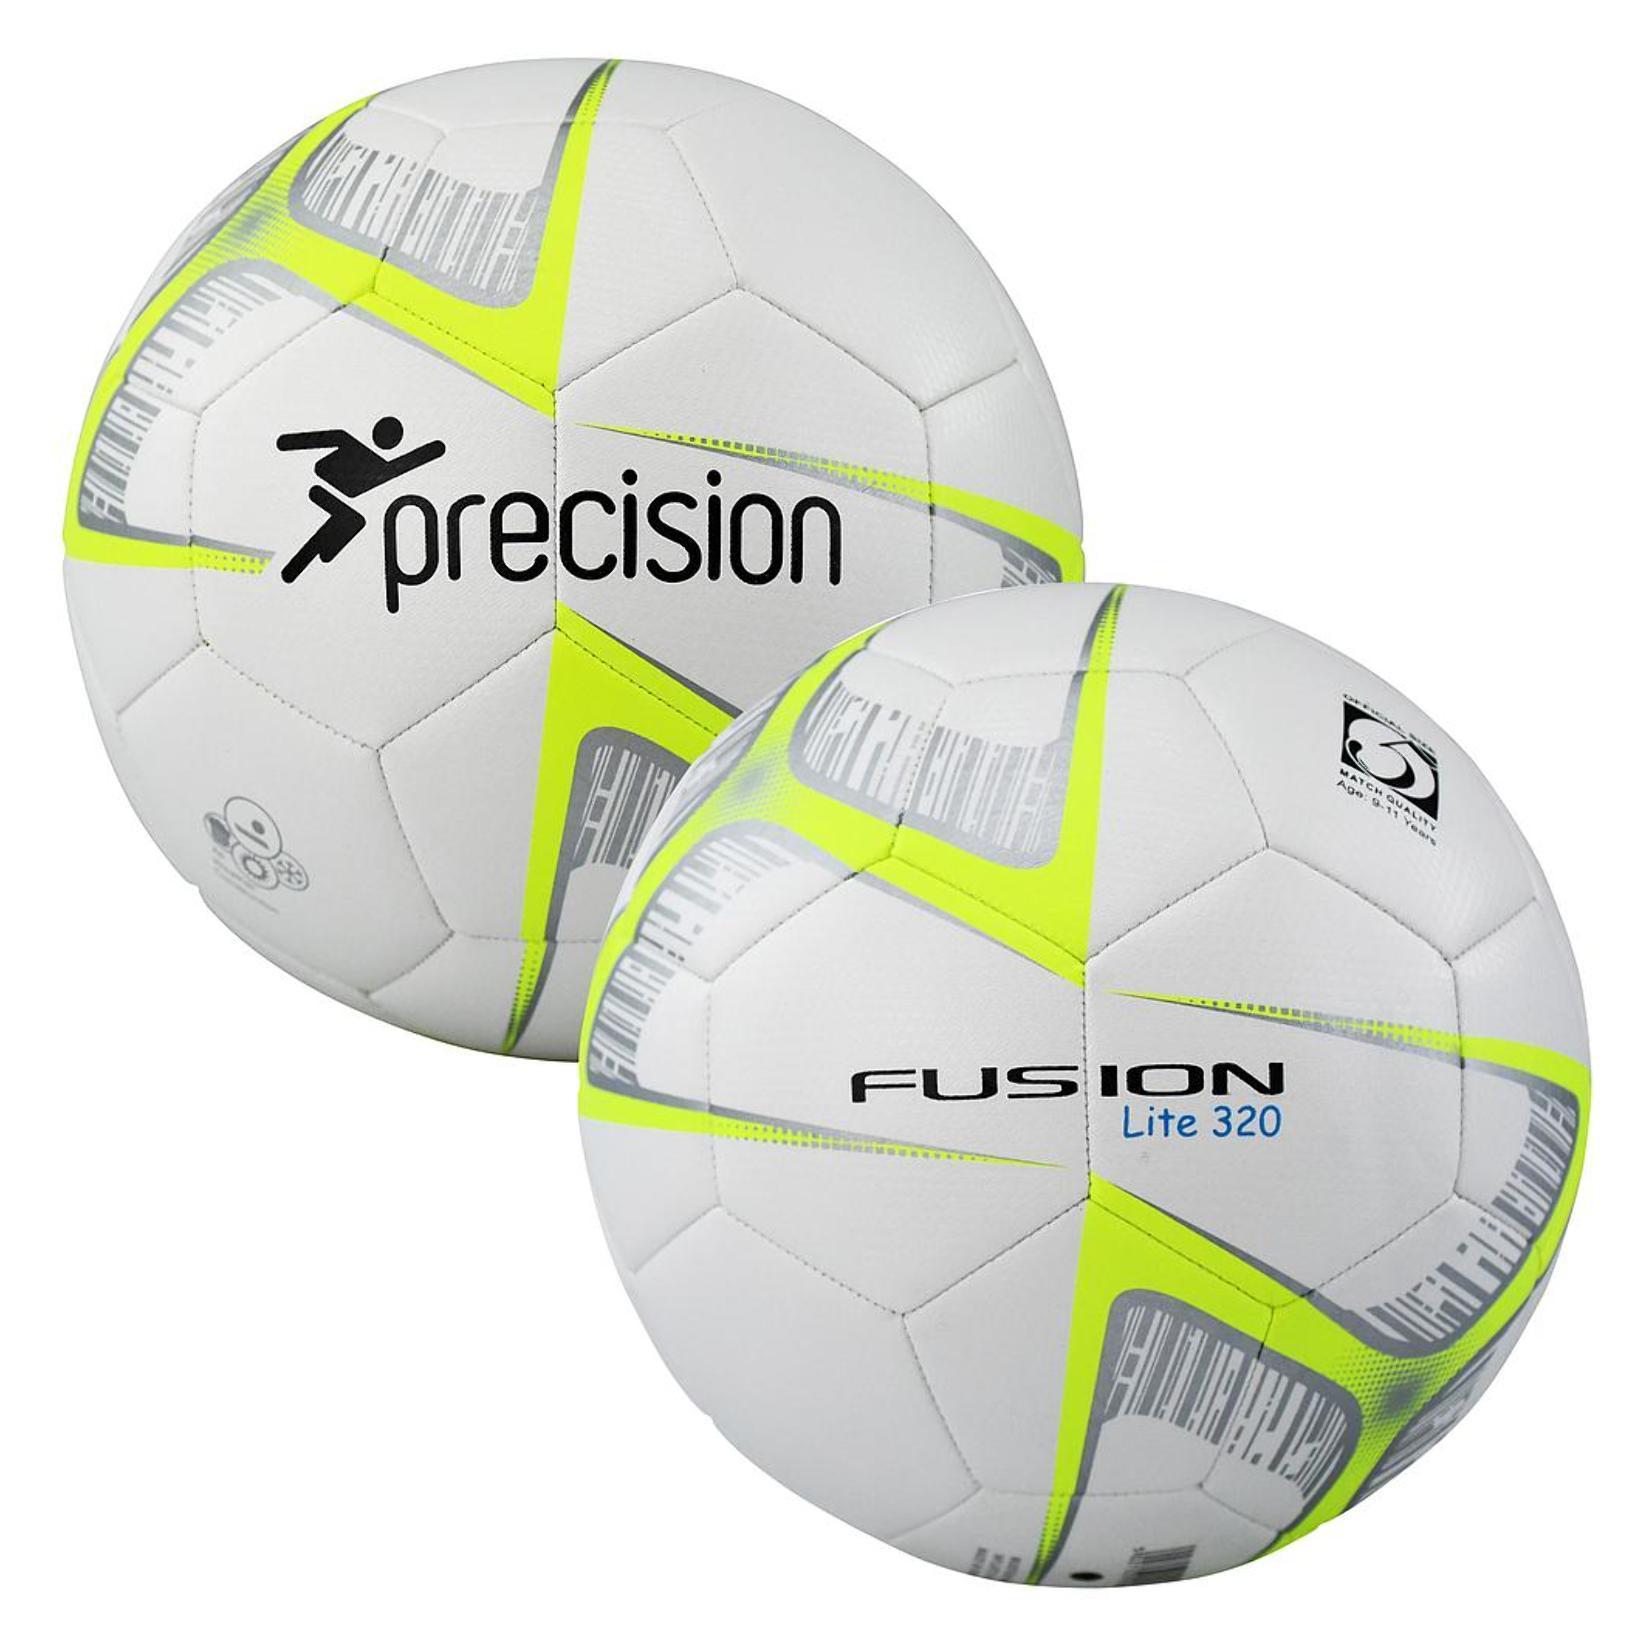 Precision Fusion Lite Football Size 5 320gms